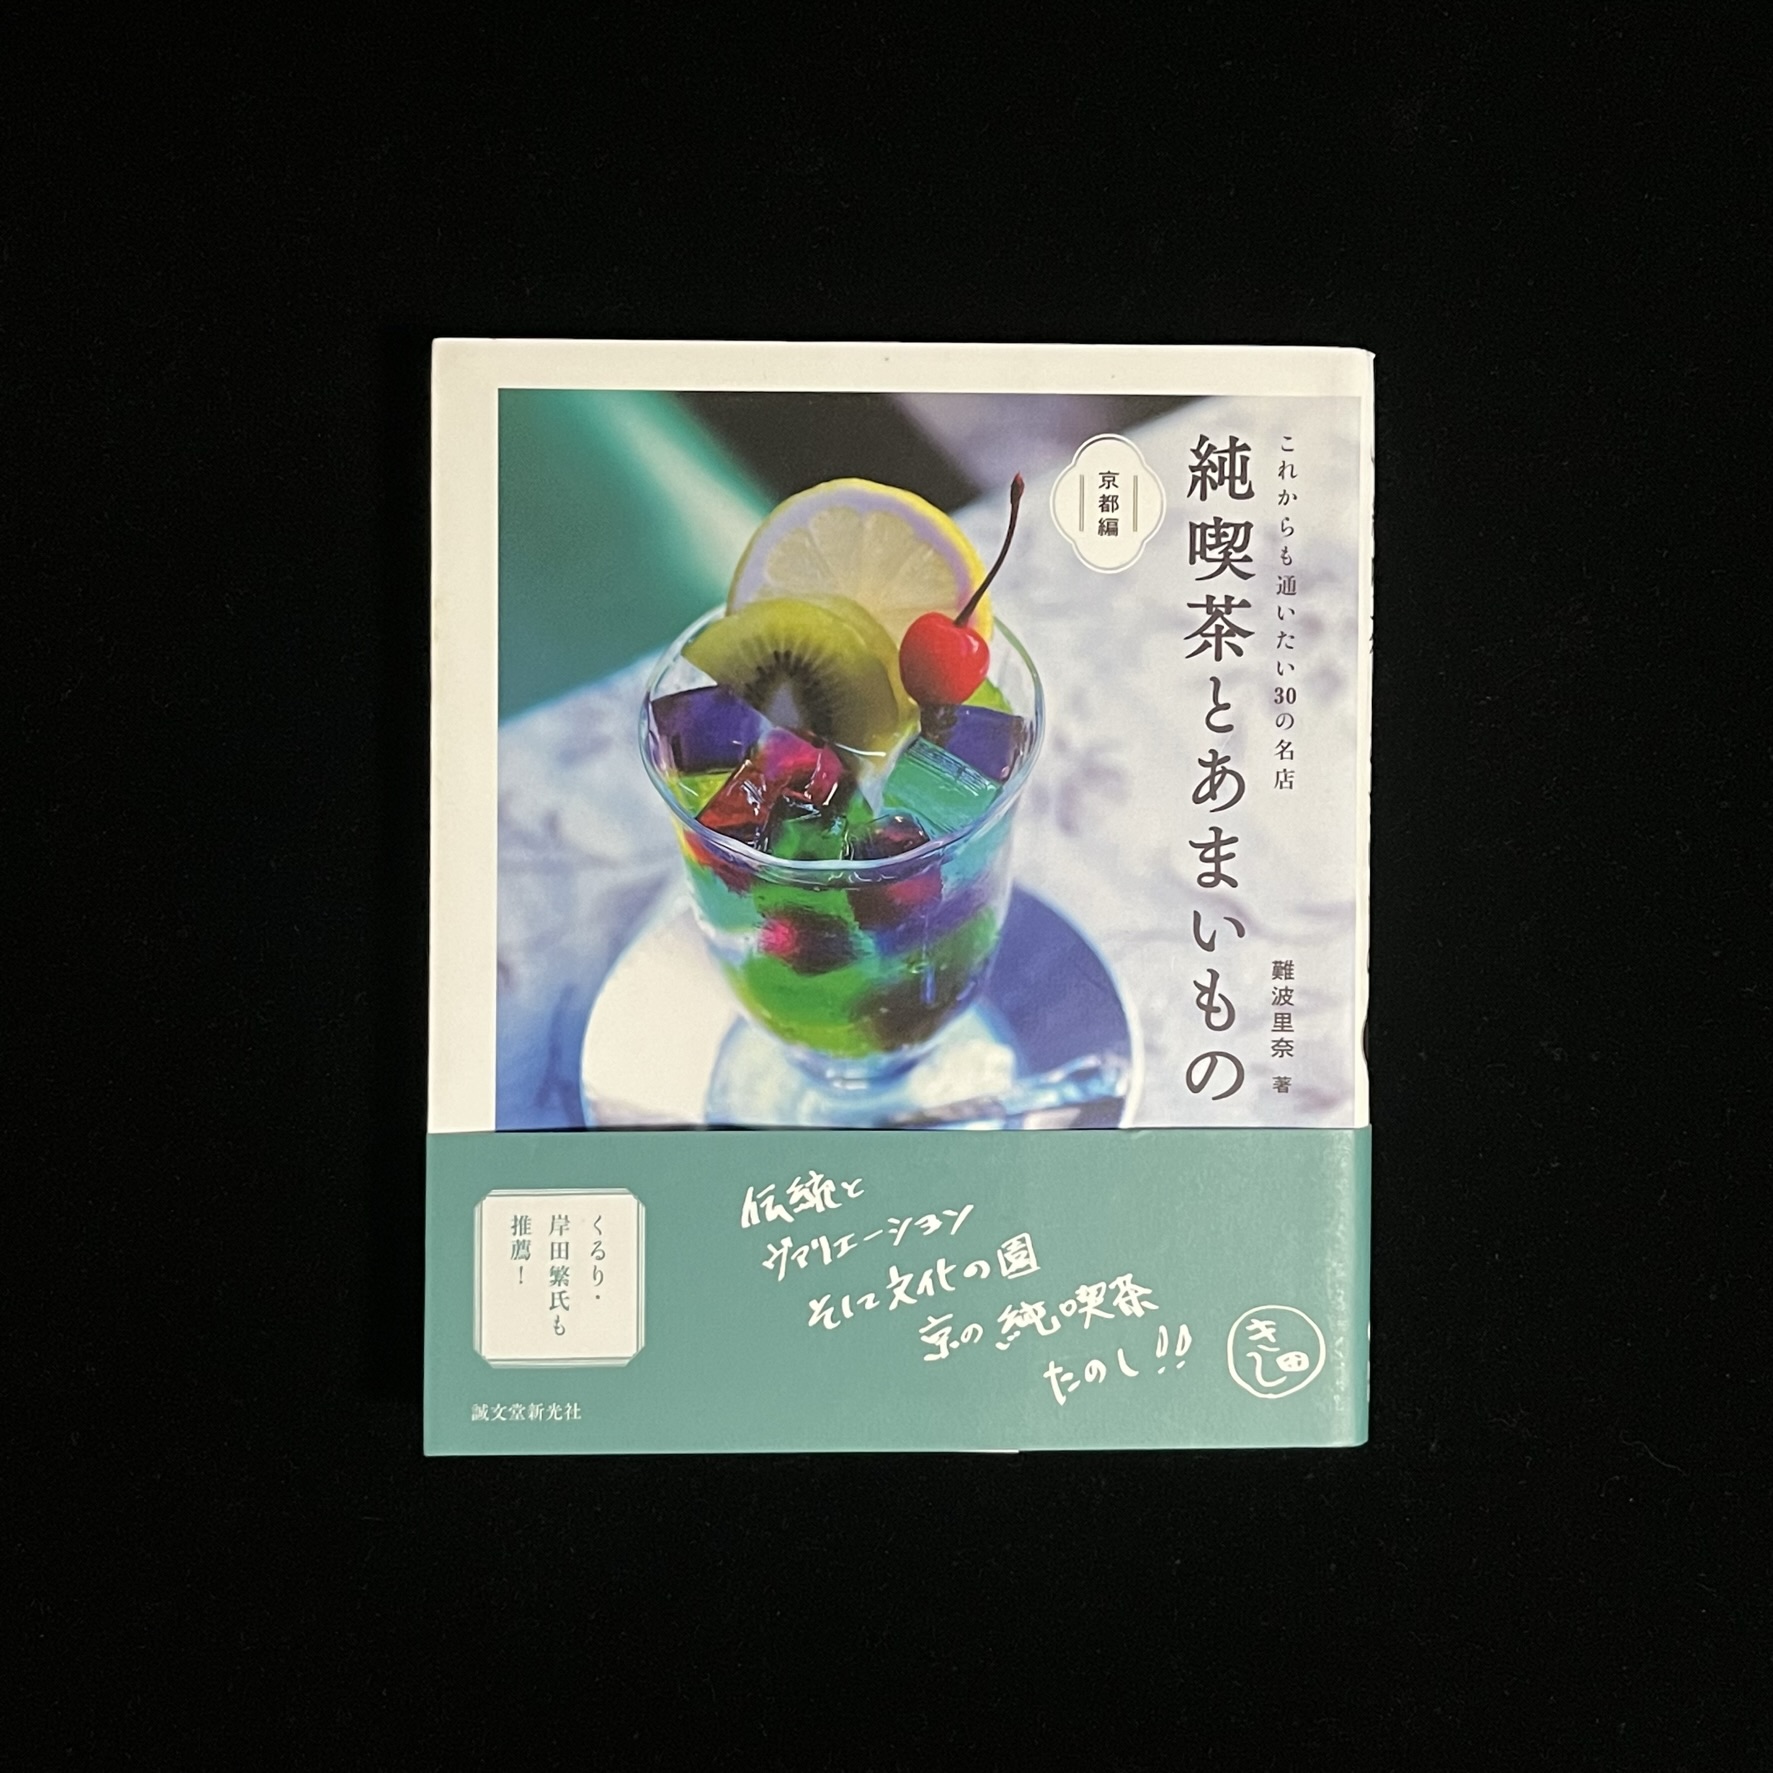 『純喫茶とあまいもの 京都編』の表紙の写真。とある京都のカフェのフルーツポンチの写真が載っています。フルーツポンチのカラフルな色合いに食べにいってみたいと思ってしまいます。